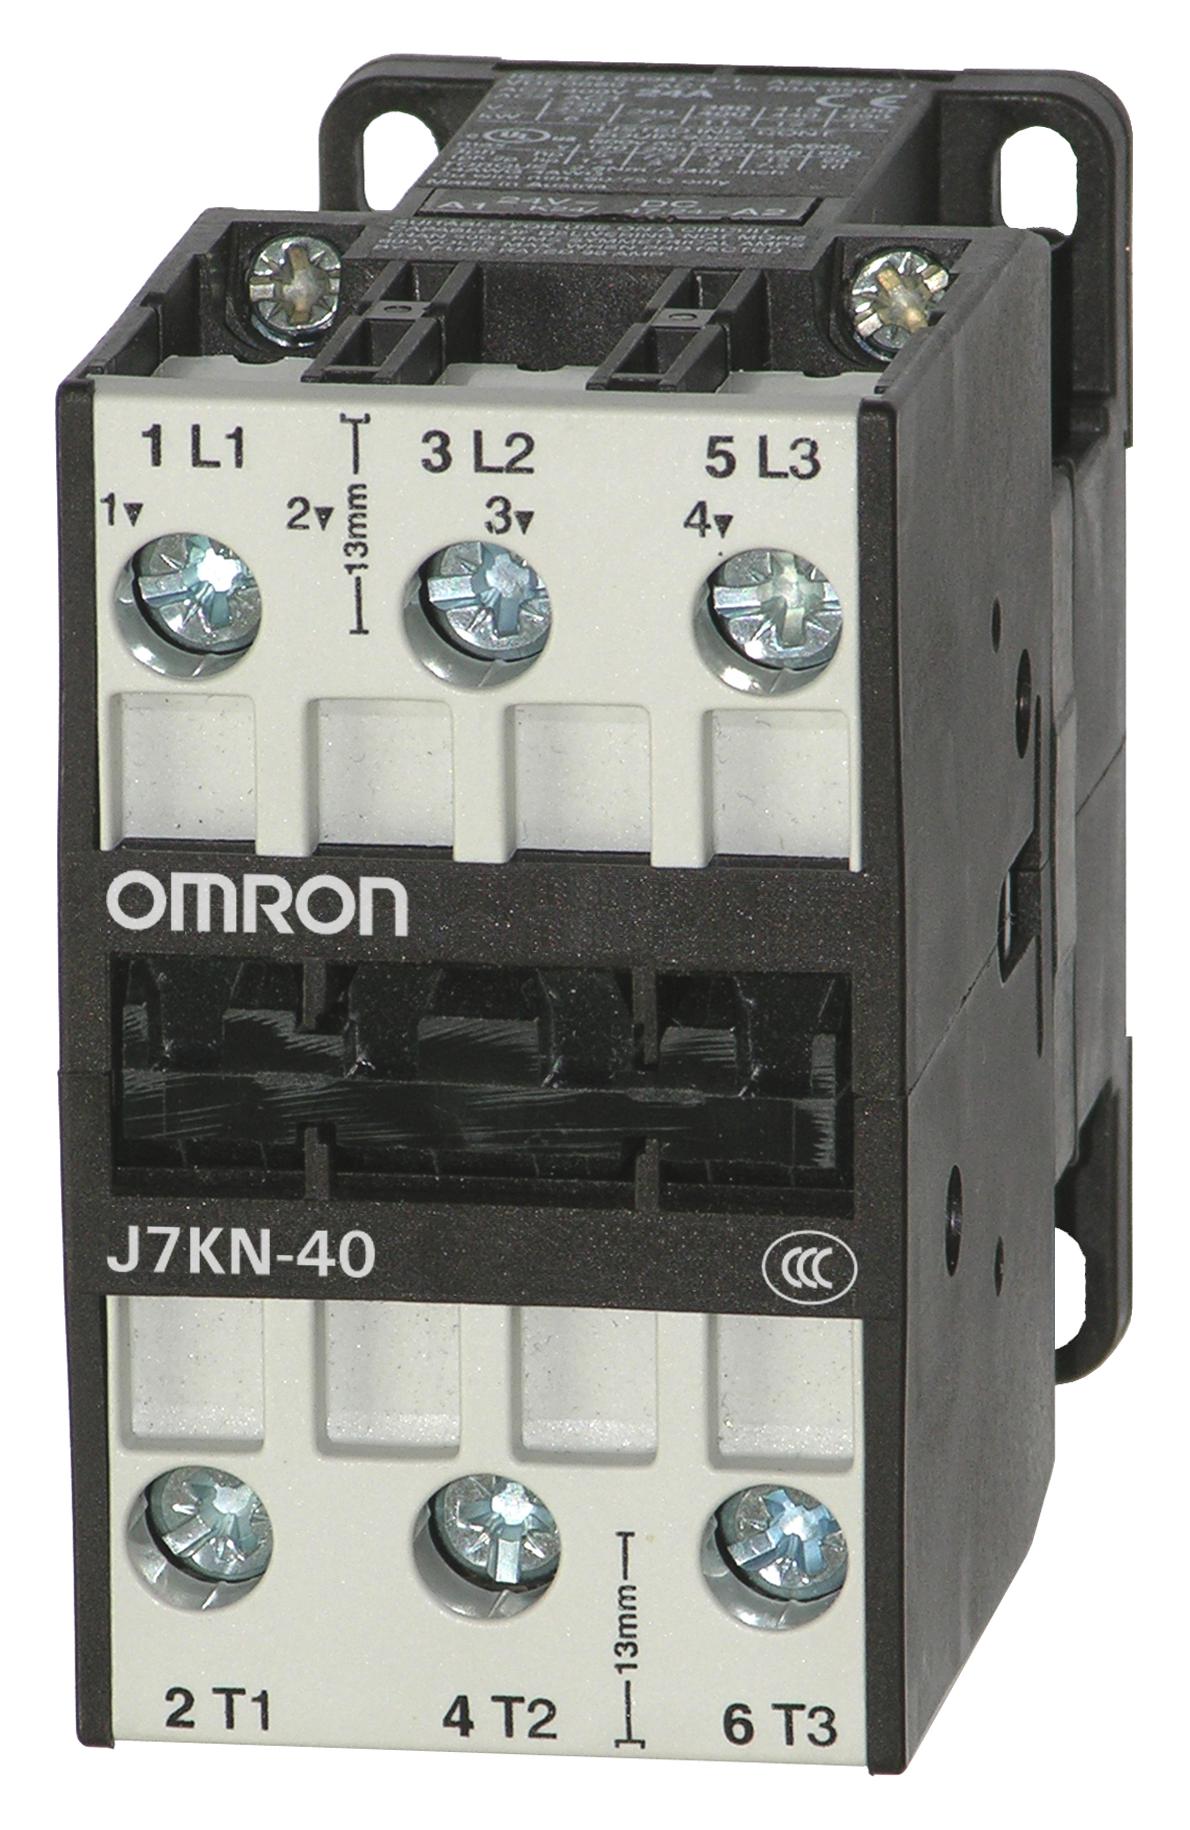 J7KN-40 24 CONTACTORS RELAYS OMRON